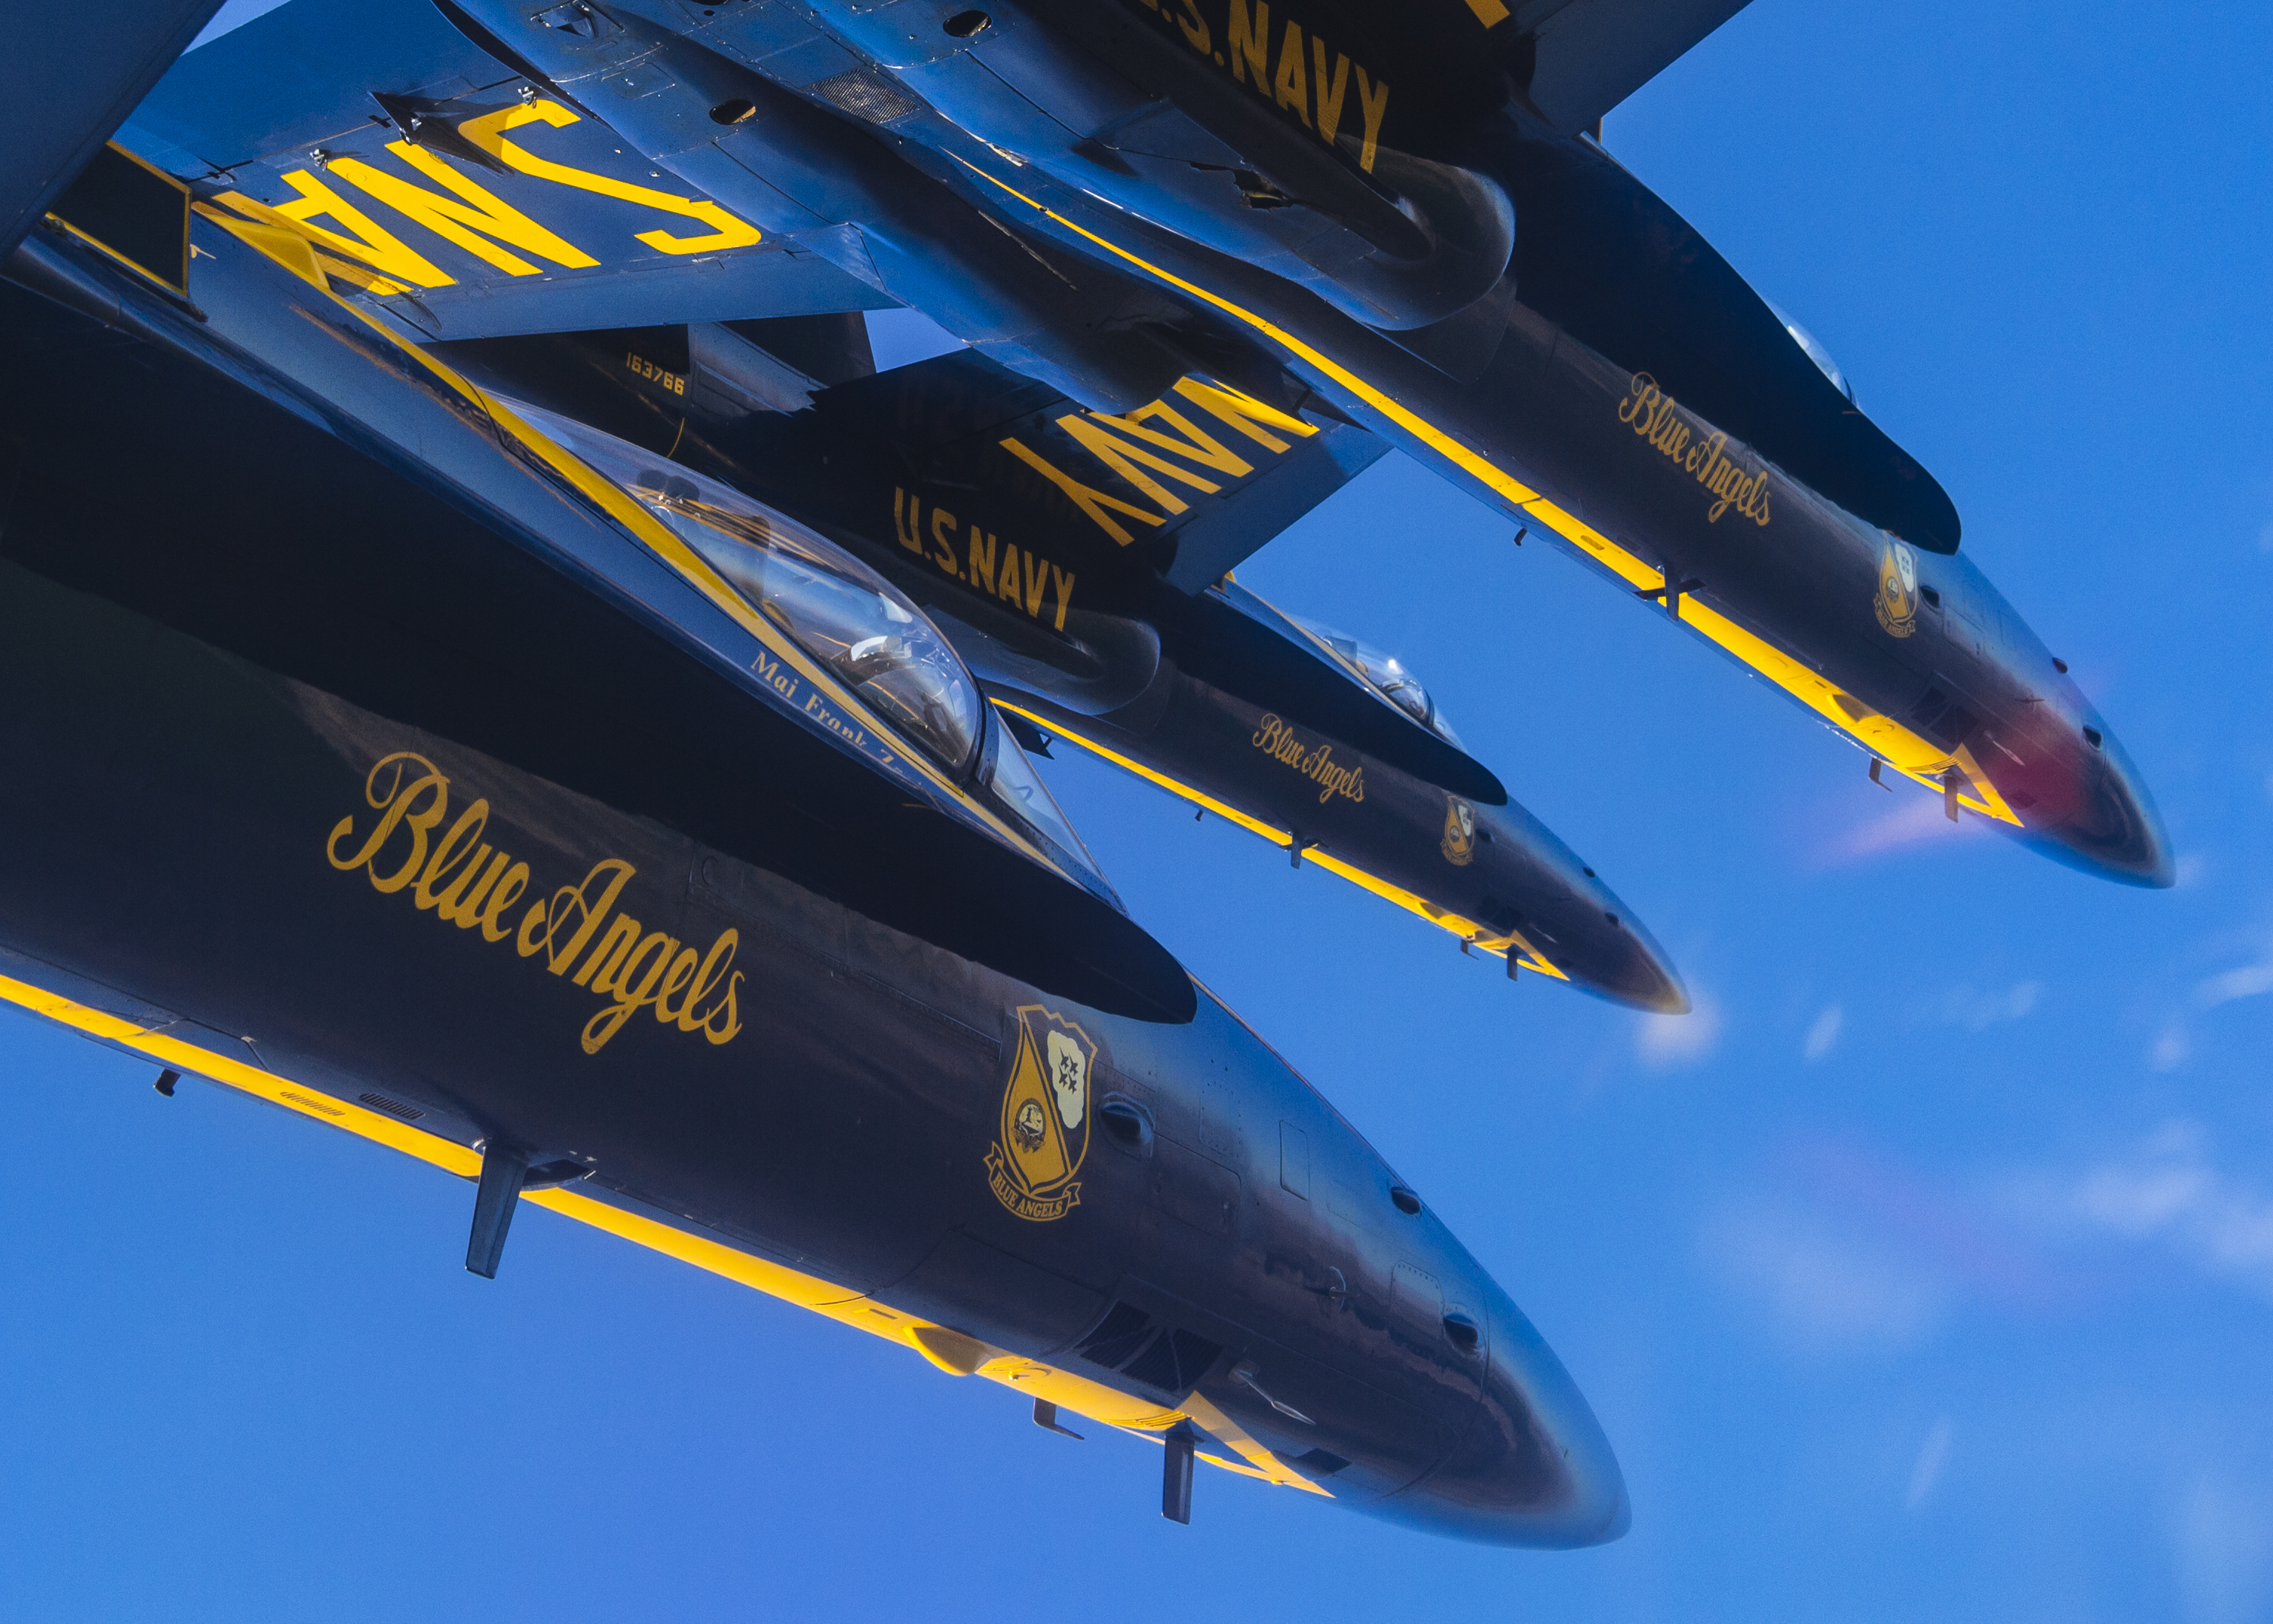 В ходе подготовки к демонстрационному сезону 2020  демонстрационно-пилотажная группа ВМС США Blue Angels выполняет  групповой разворот, фото сделано 3 марта 2020 года на станции морской авиации  El Centro, шт. Калифорния